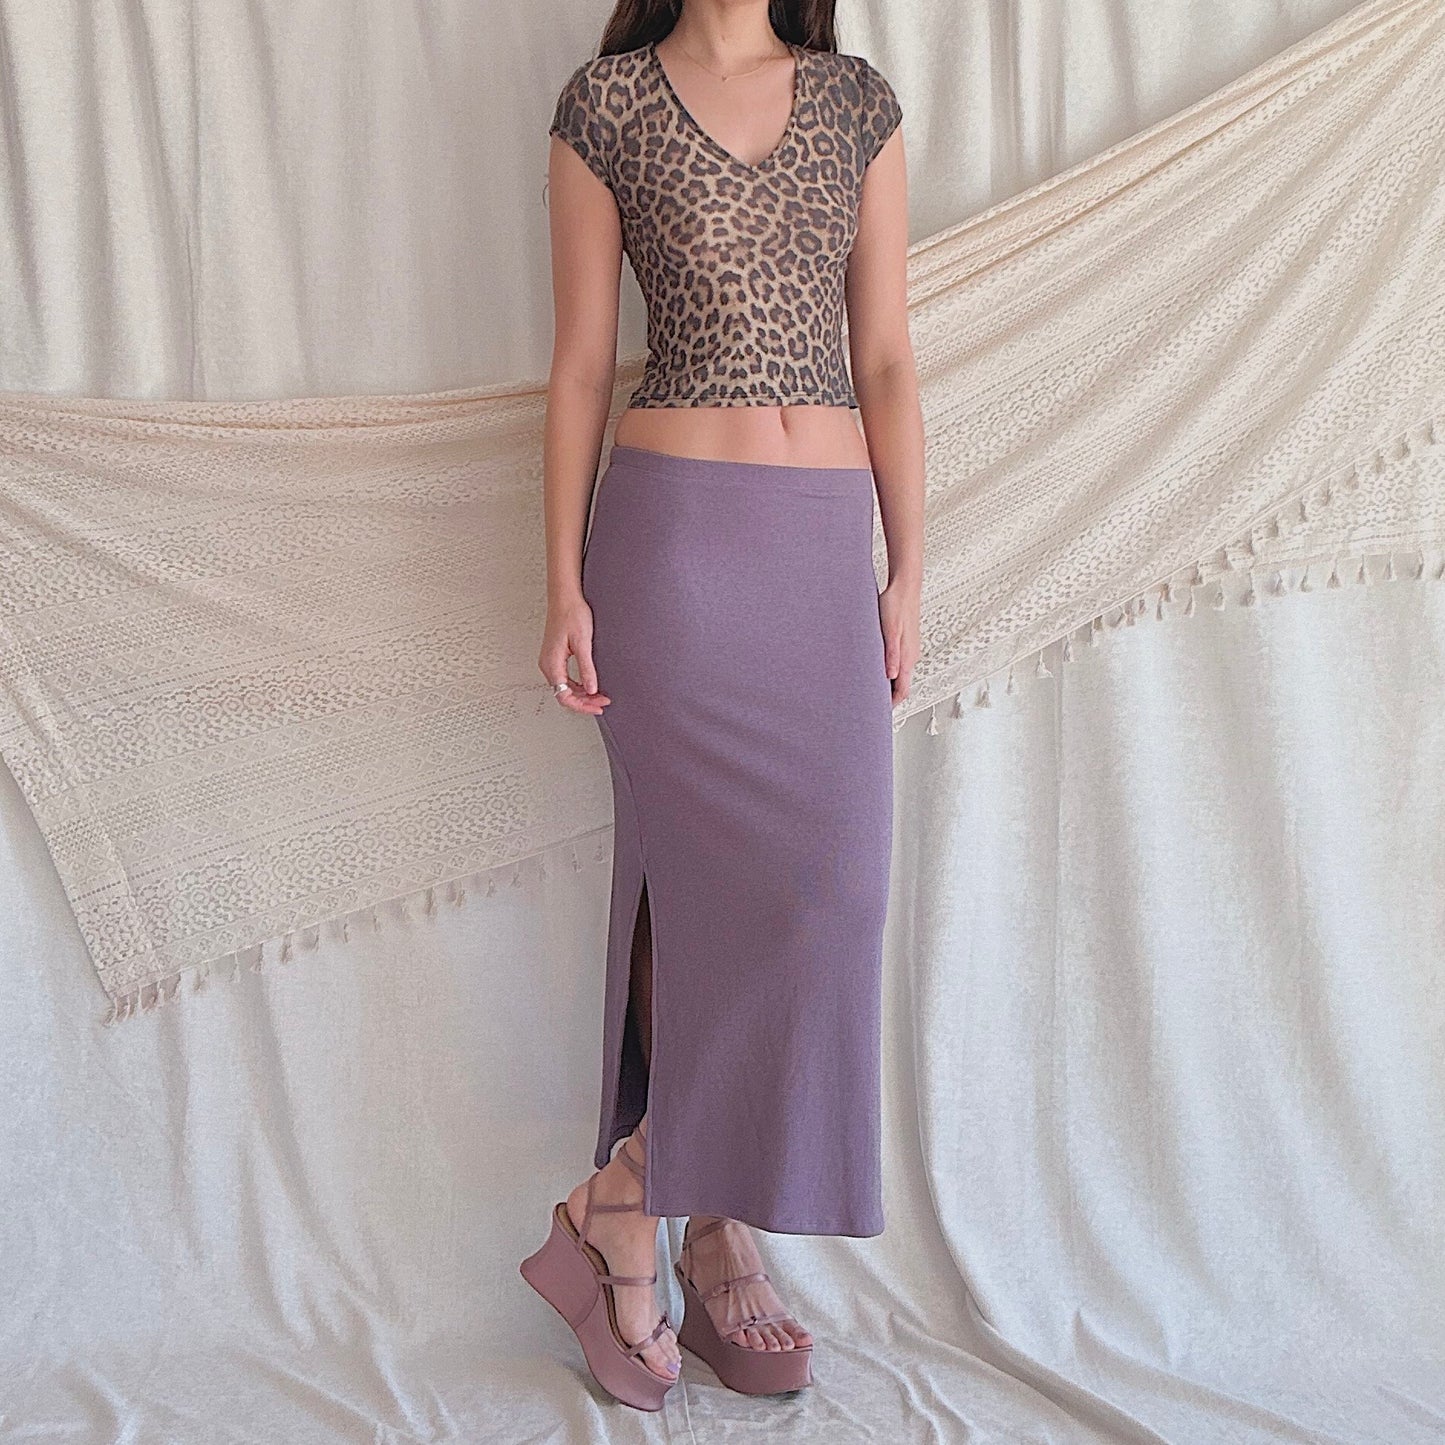 90's Heather Purple Stretch Knit Maxi Skirt / SZ S